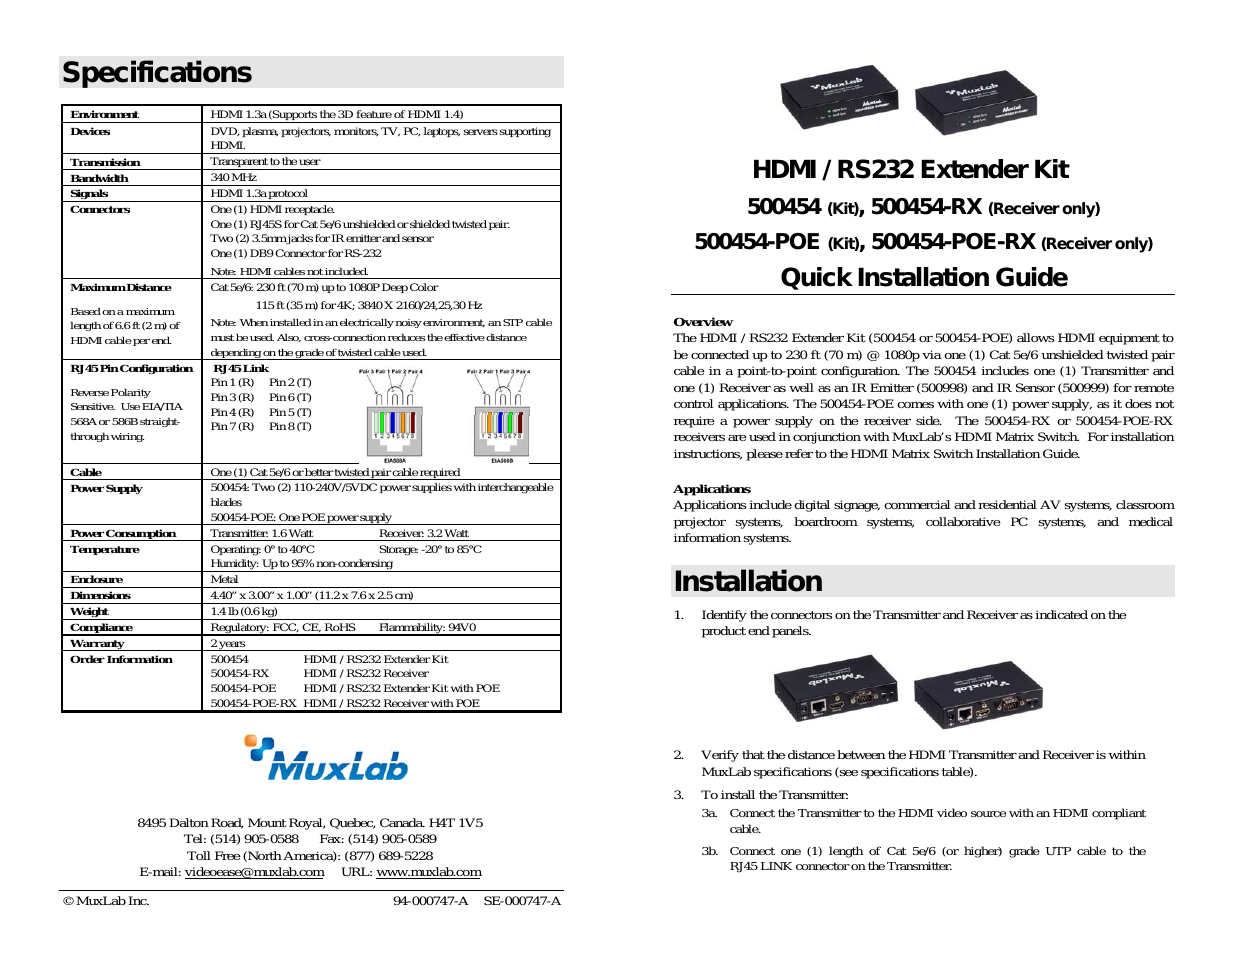 HDMI/RS232 Extender Kit + HDMI/RS232 Extender Kit with PoE